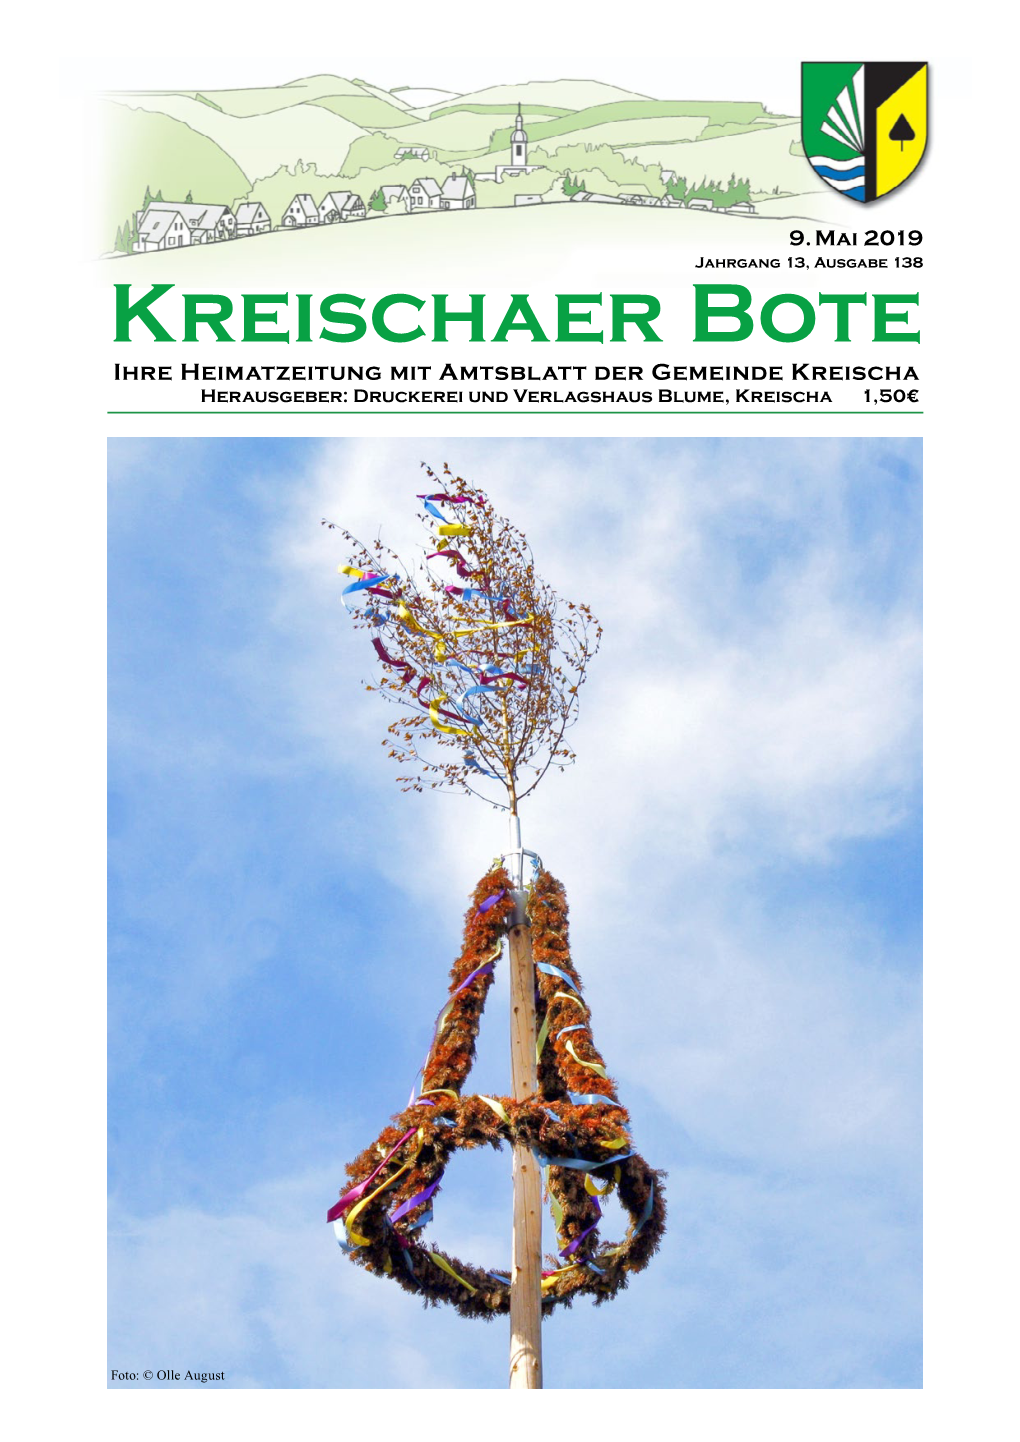 Kreischaer Bote Ihre Heimatzeitung Mit Amtsblatt Der Gemeinde Kreischa Herausgeber: Druckerei Und Verlagshaus Blume, Kreischa 1,50€